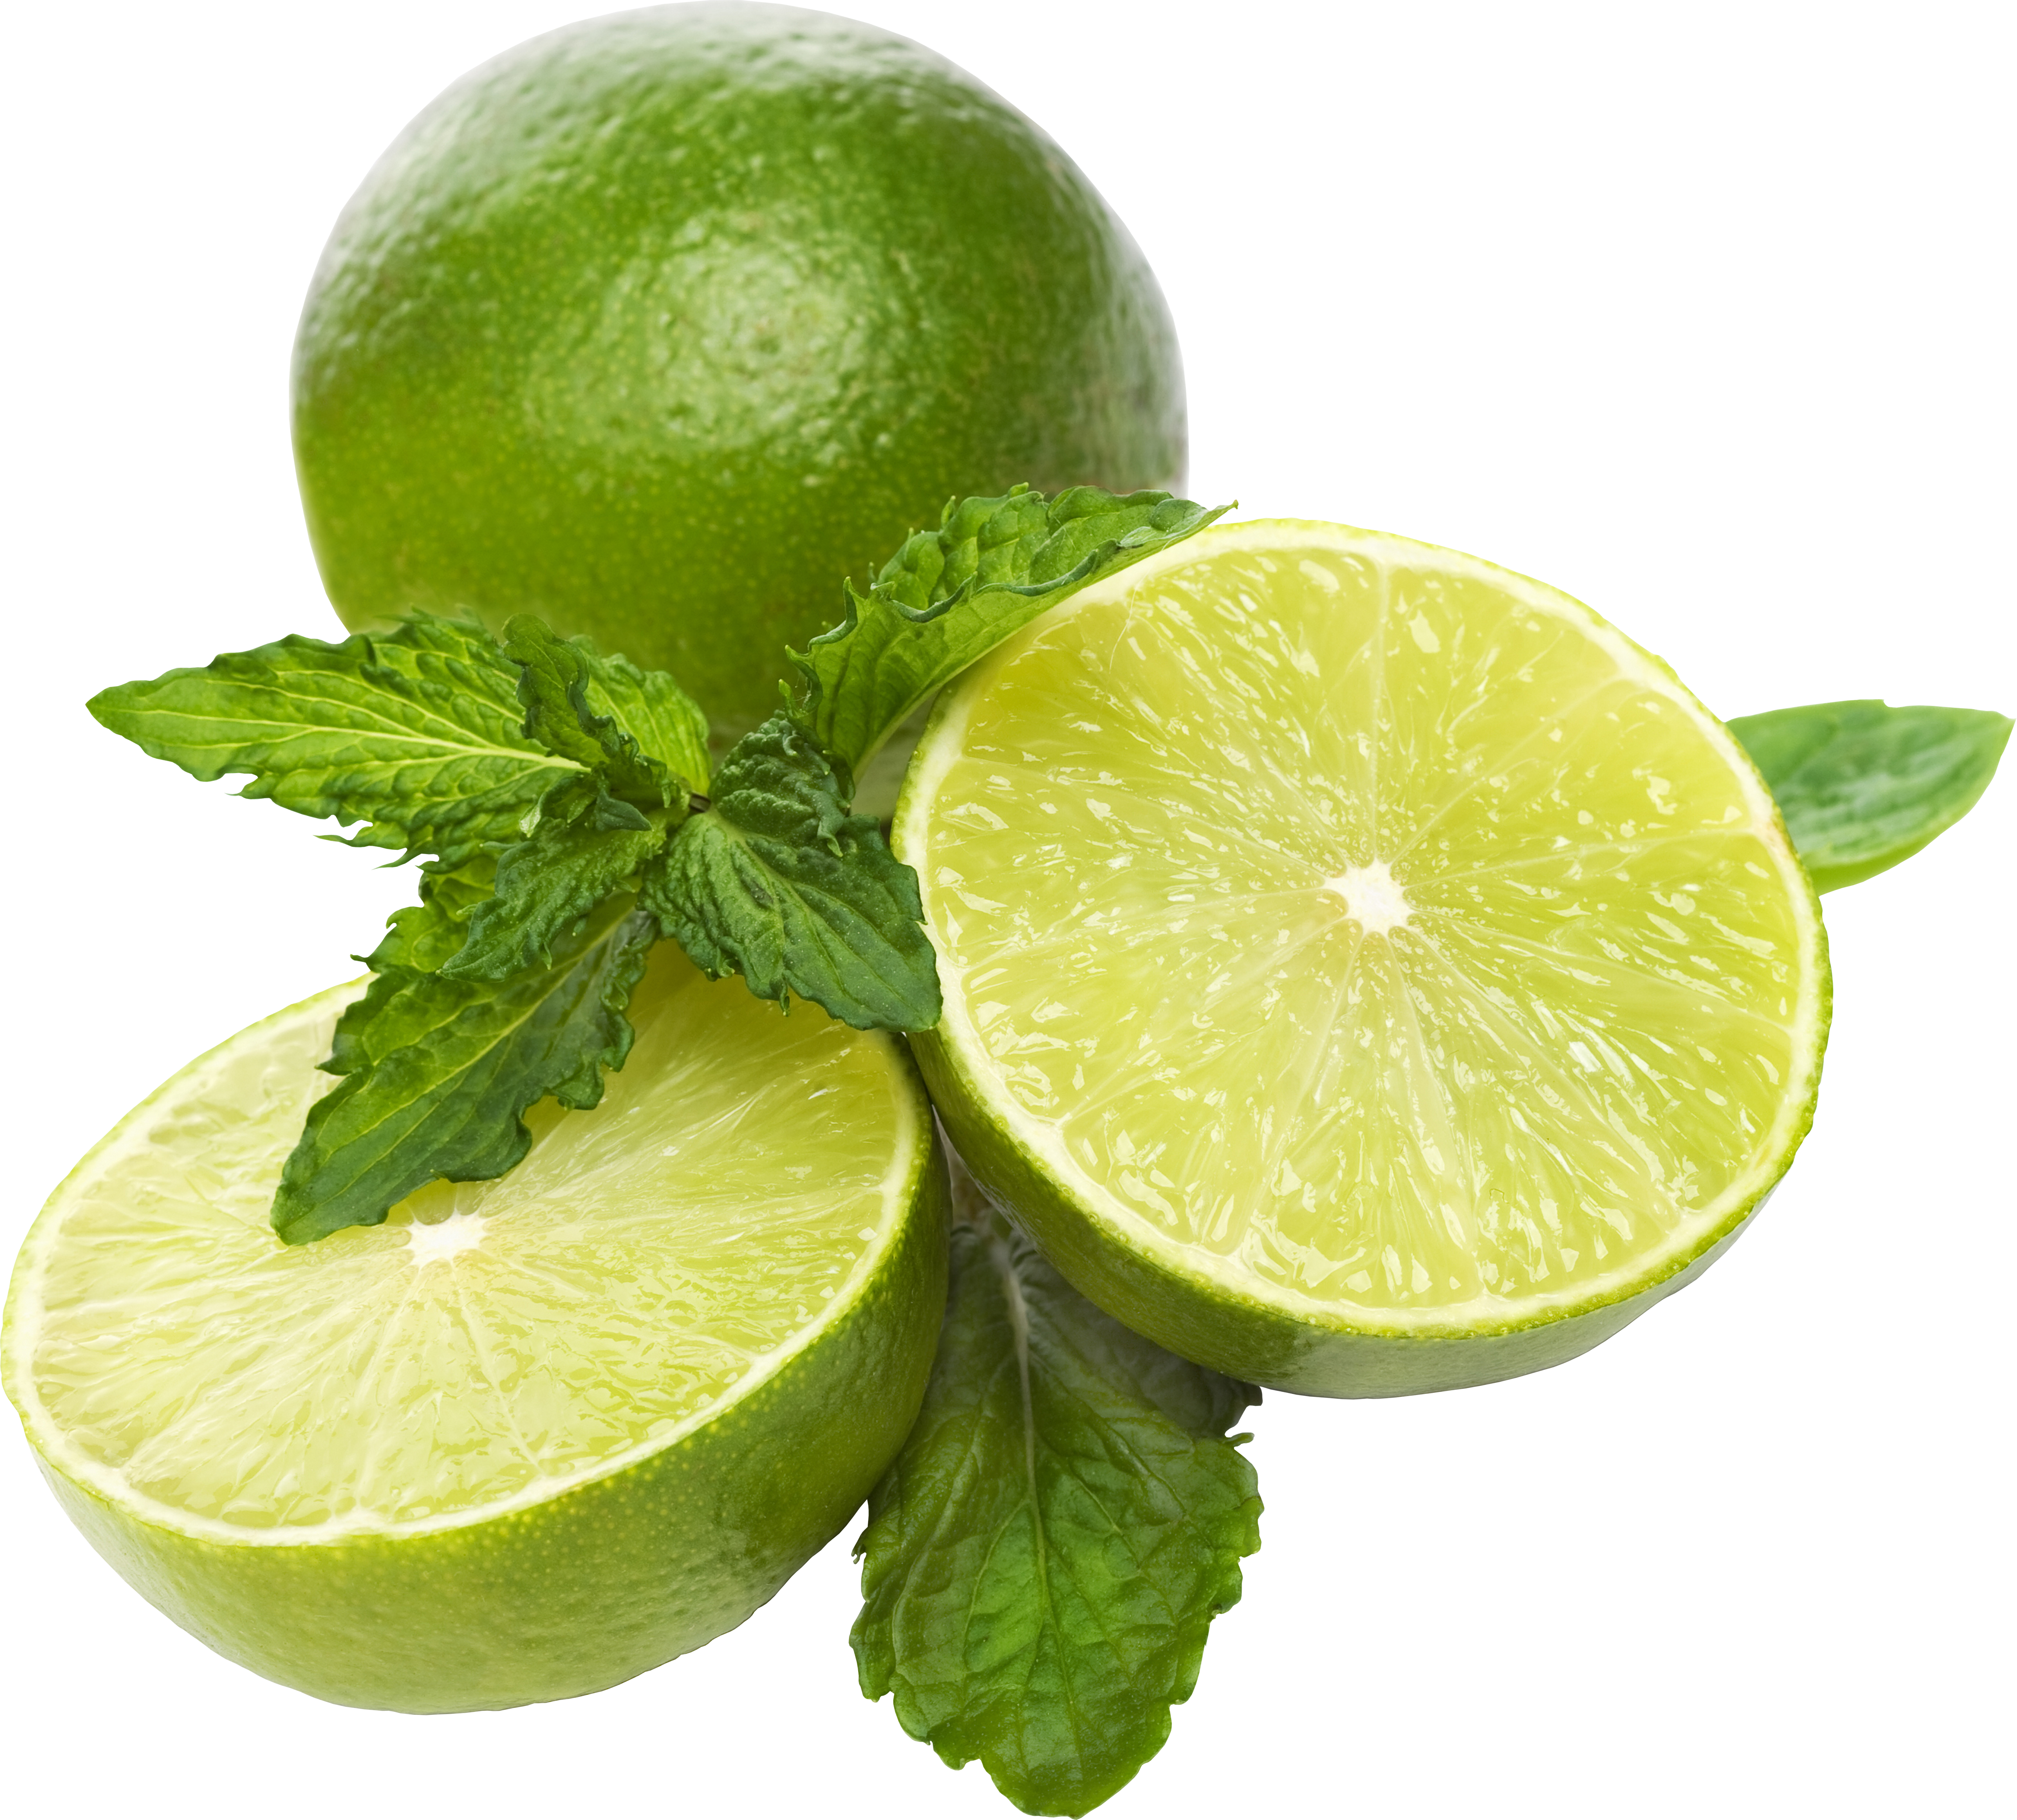 Zielony pomarańczowy, limonka